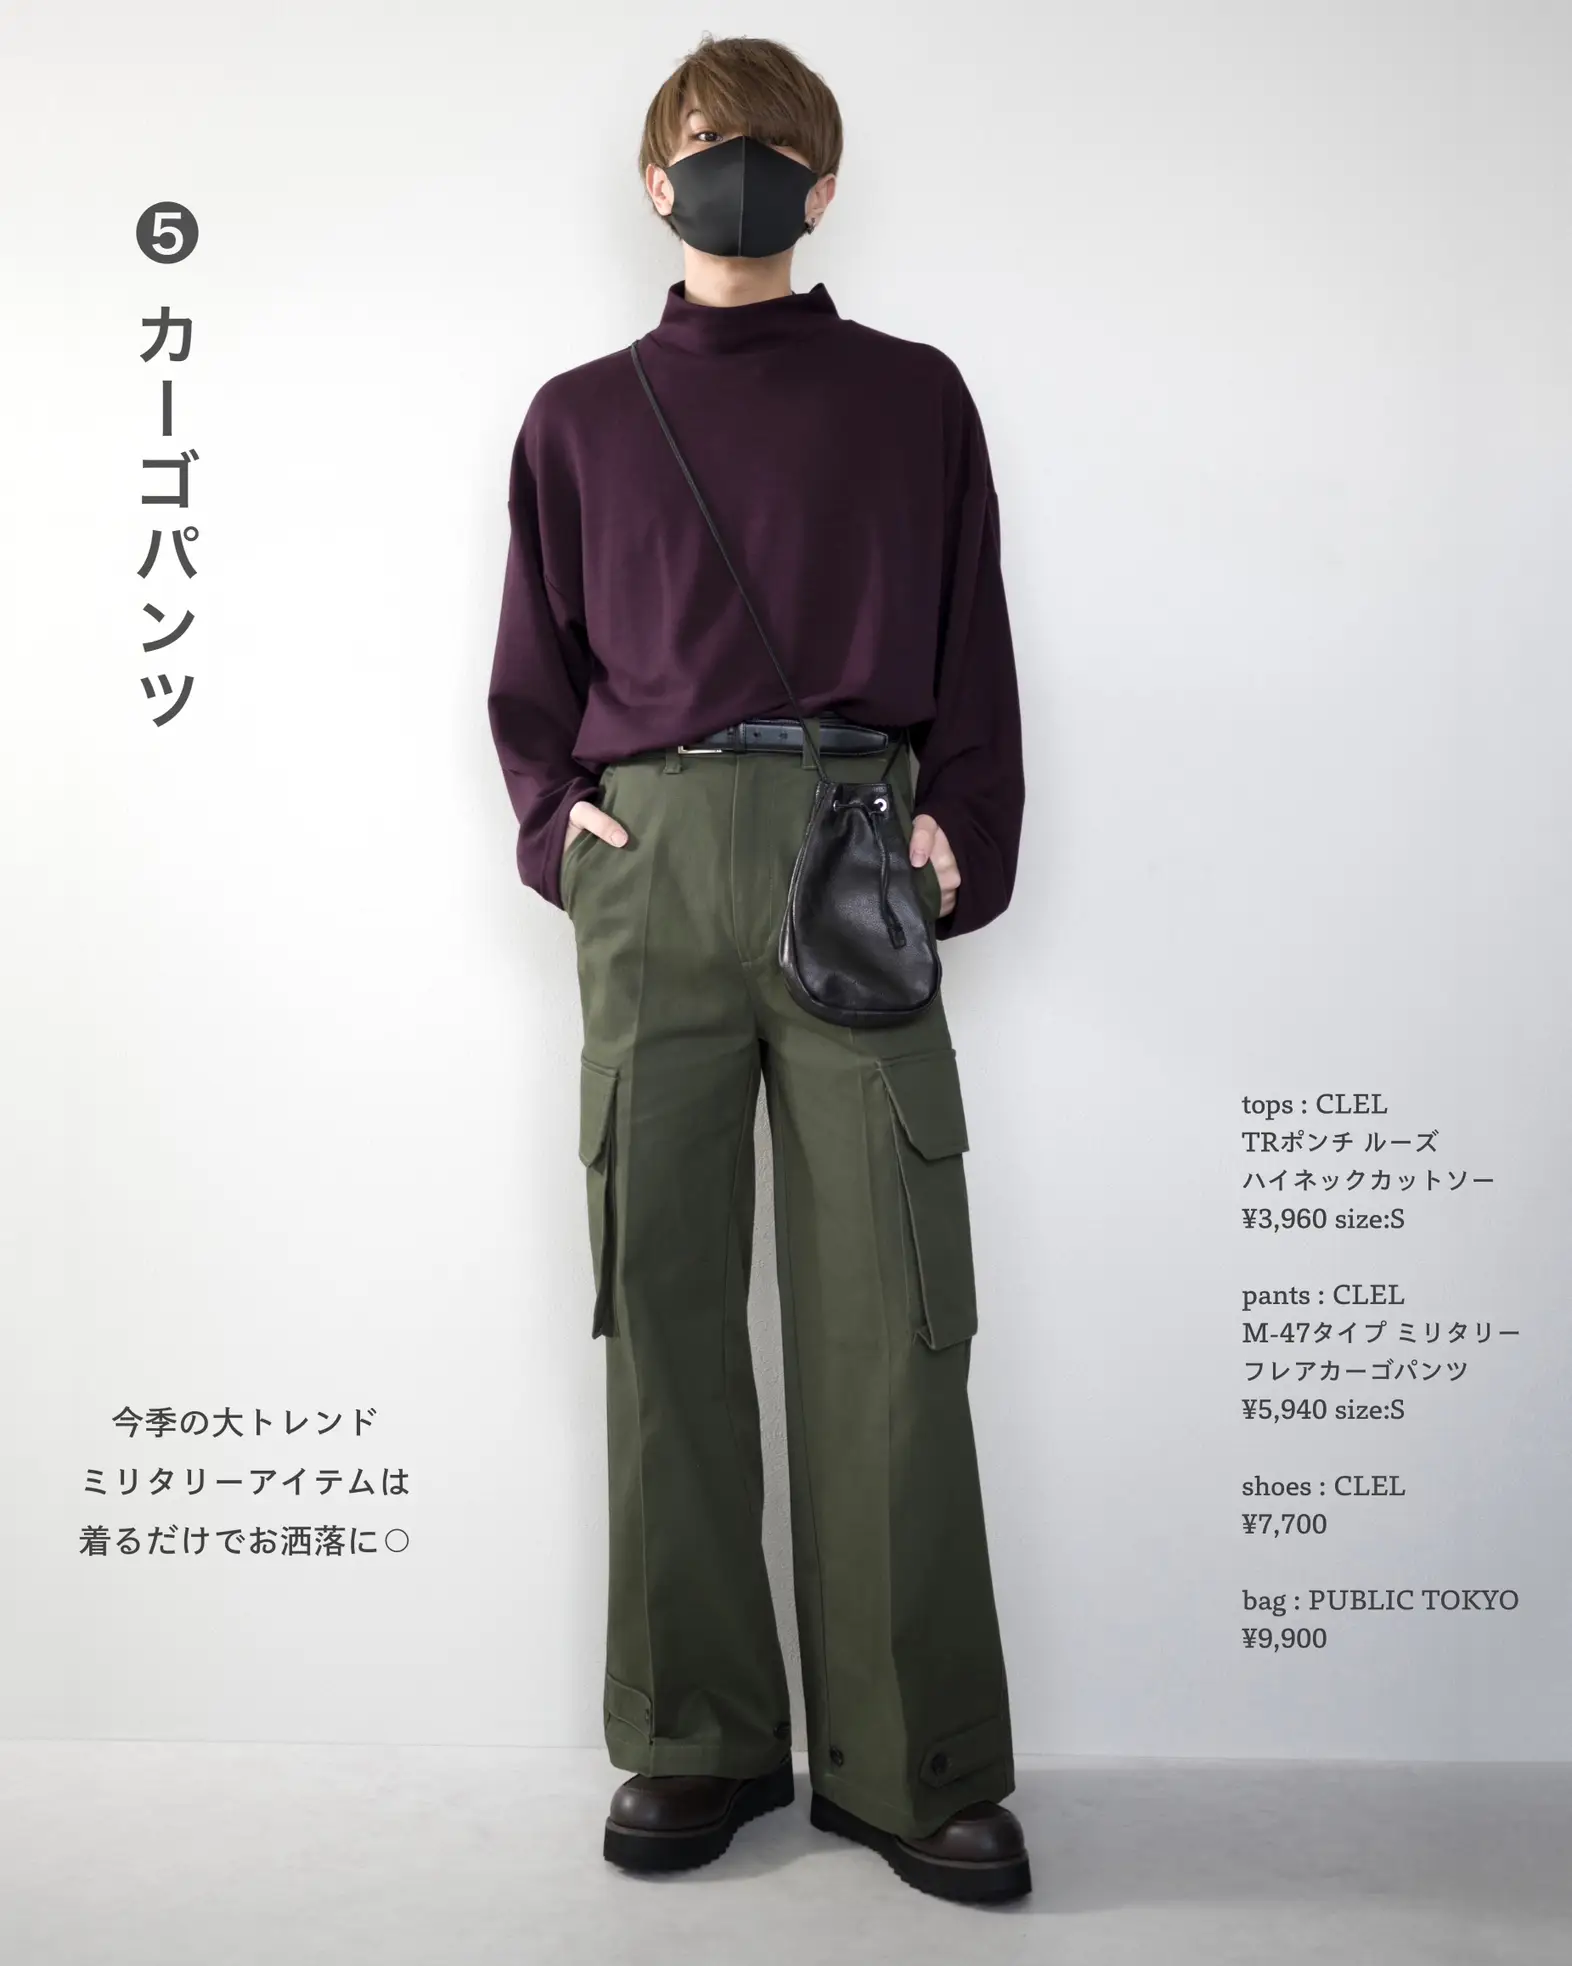 新作グッ 【CLEL】M-47 タイプ ミリタリー フレア カーゴ パンツ - パンツ